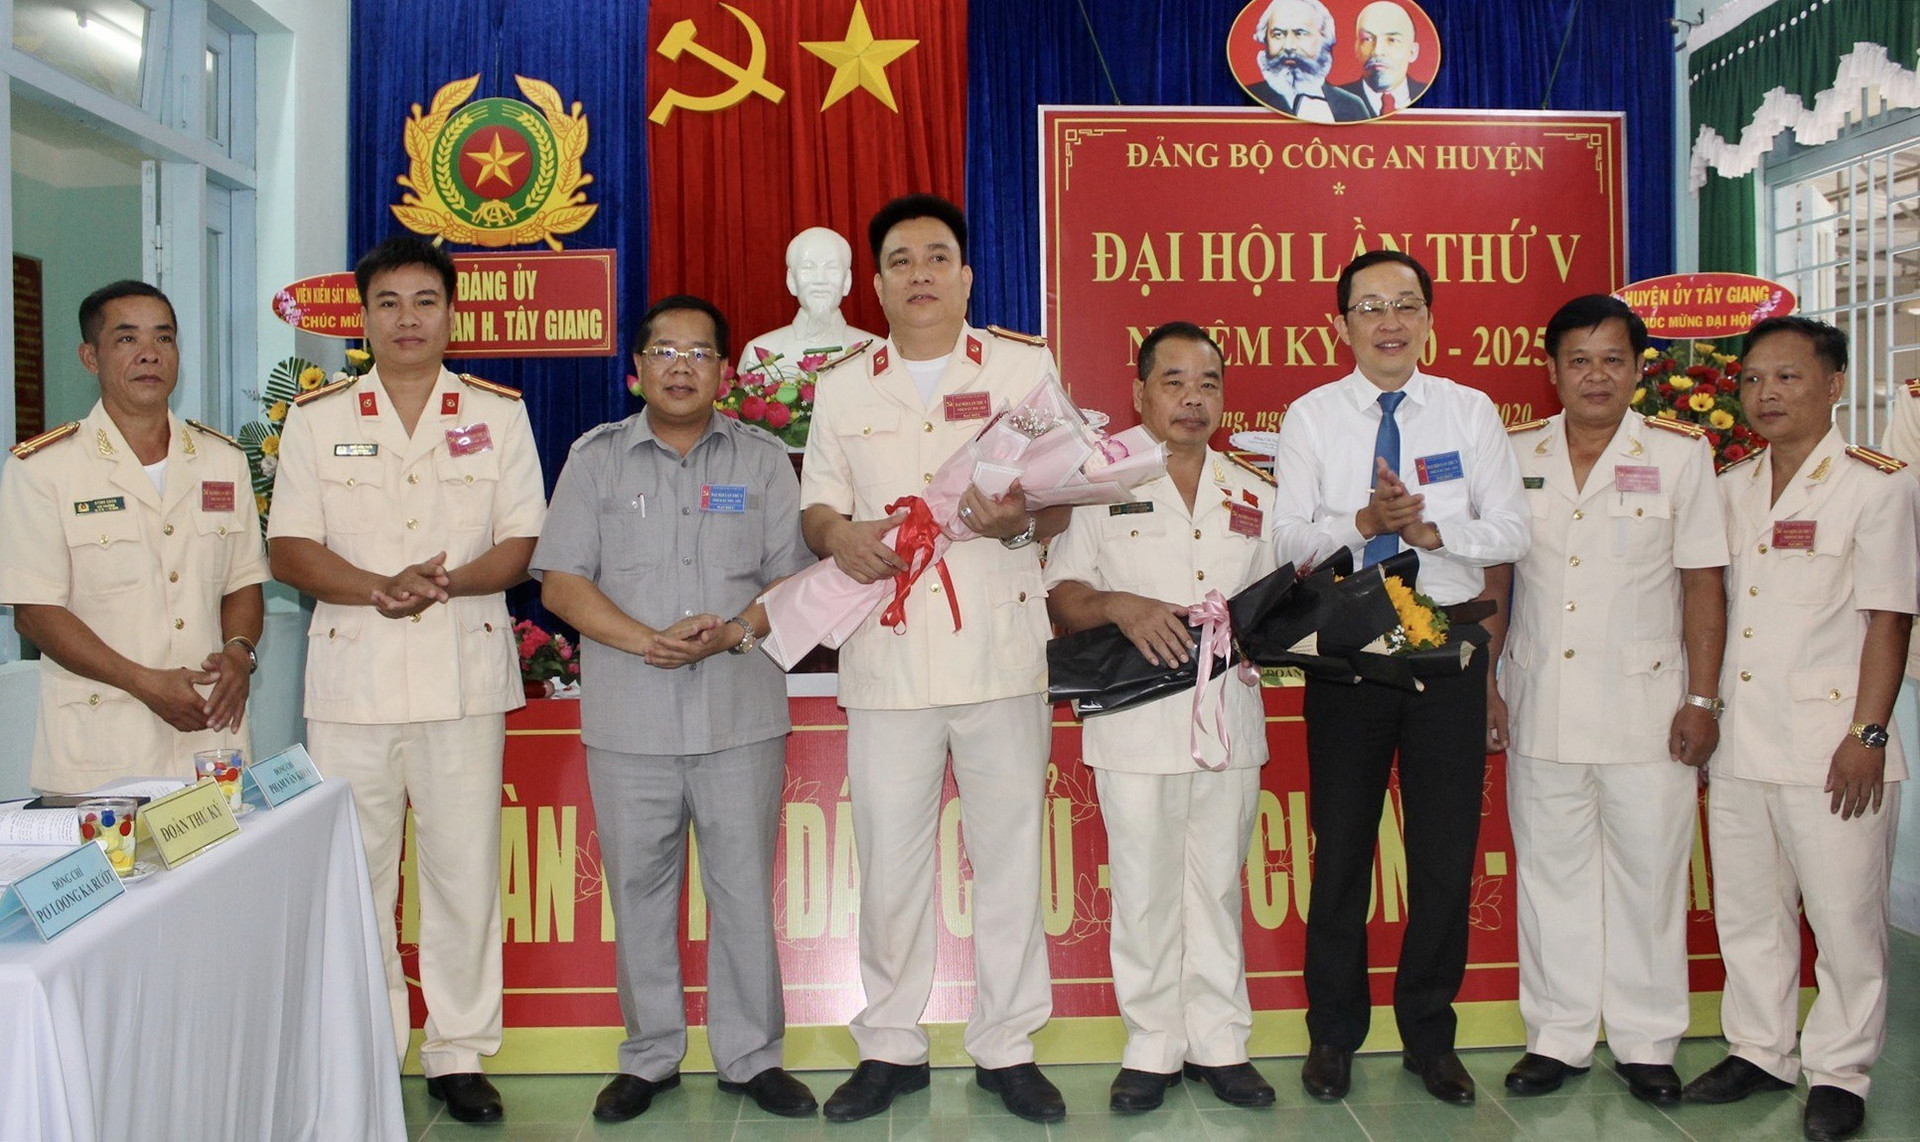 Lãnh đạo huyện Tây Giang tặng hoa chúc mừng Ban Chấp hành Đảng bộ Công an huyện khóa mới. Ảnh: ĐÌNH HIỆP